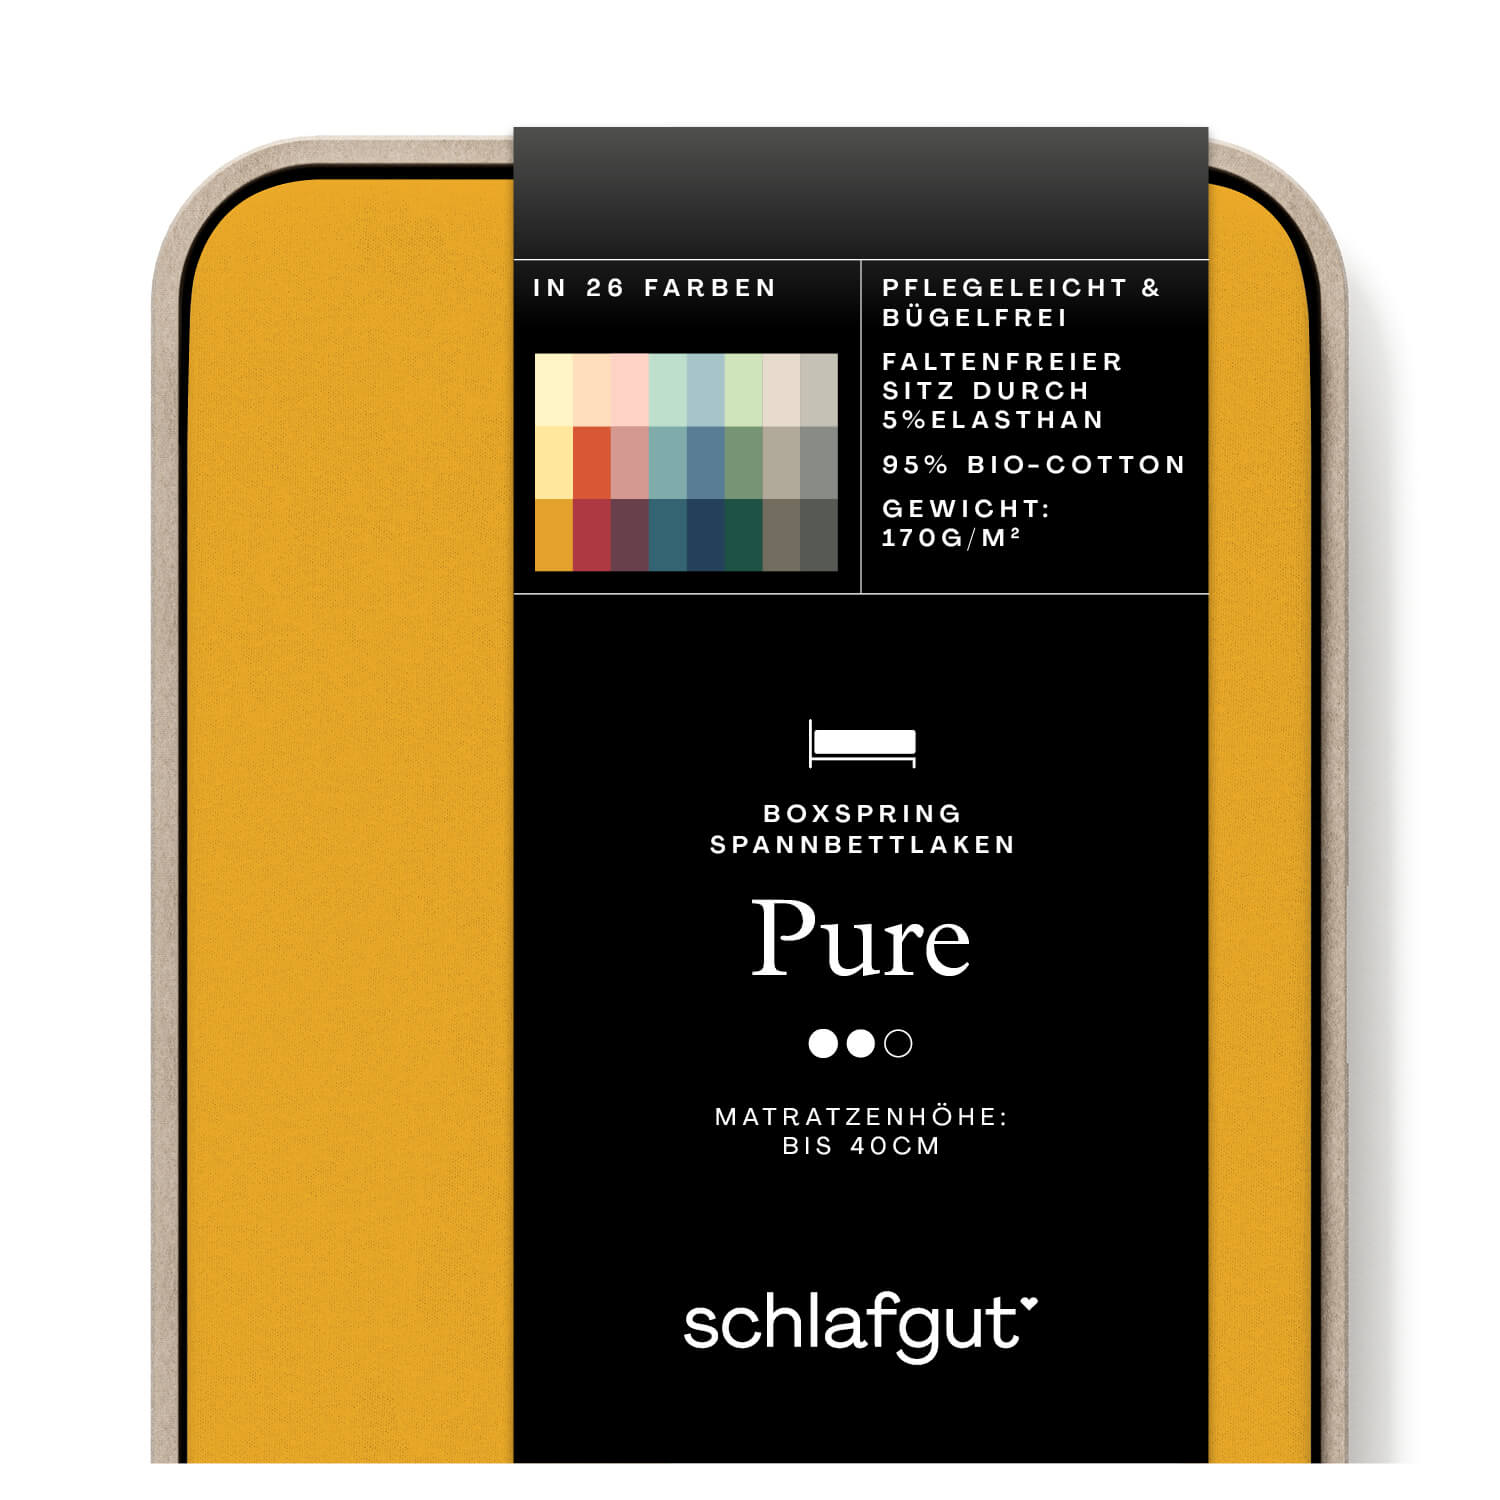 Das Produktbild vom Spannbettlaken der Reihe Pure Boxspring in Farbe yellow deep von Schlafgut